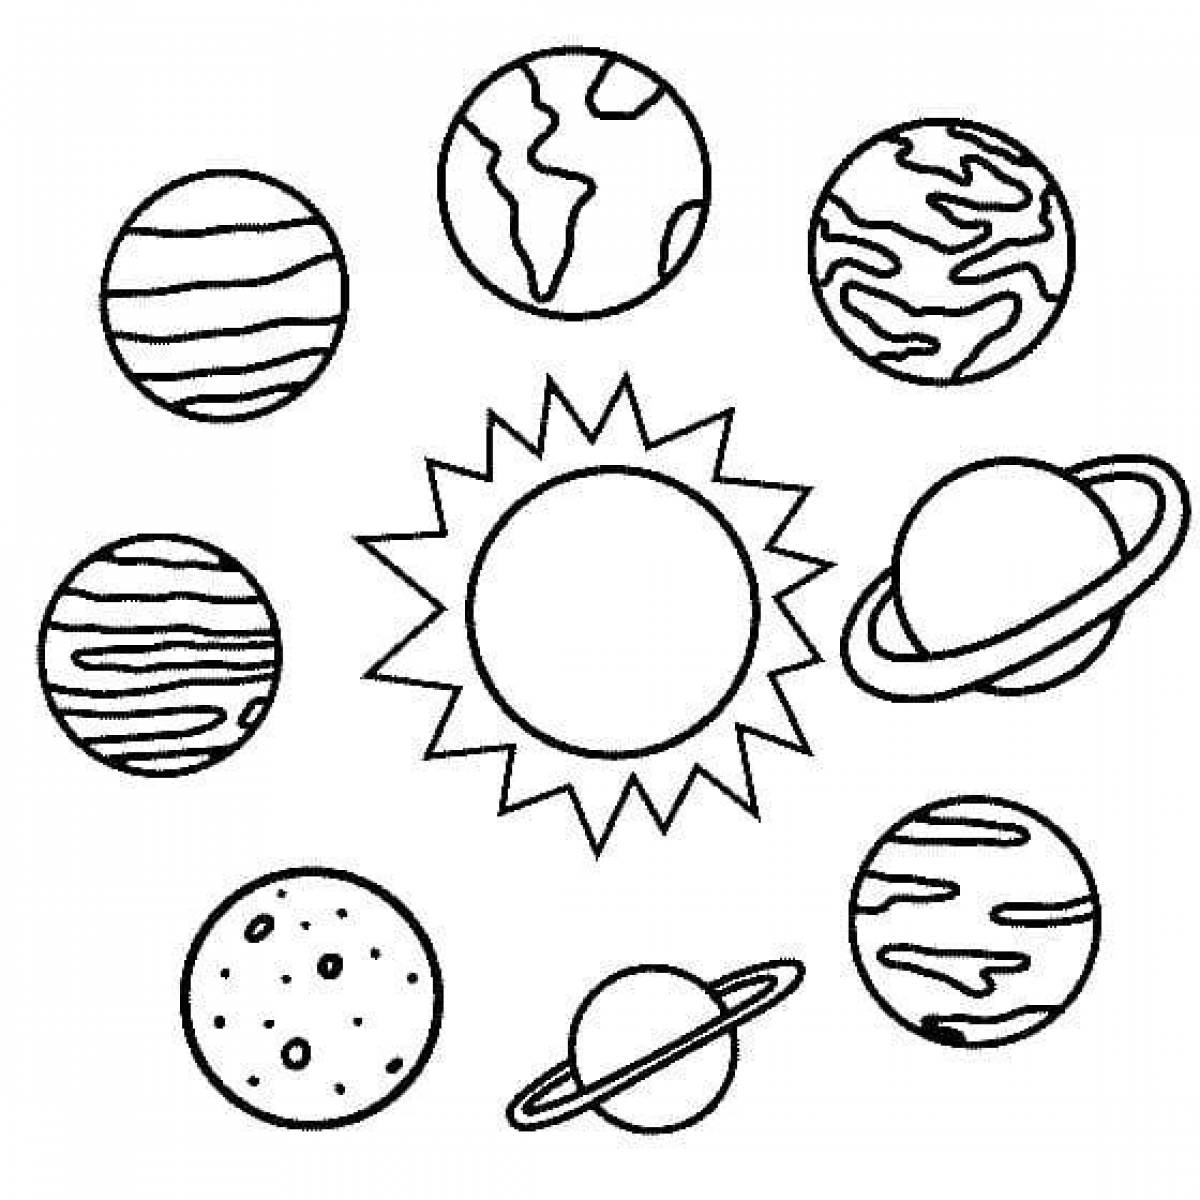 Раскраска солнечная система для детей распечатать